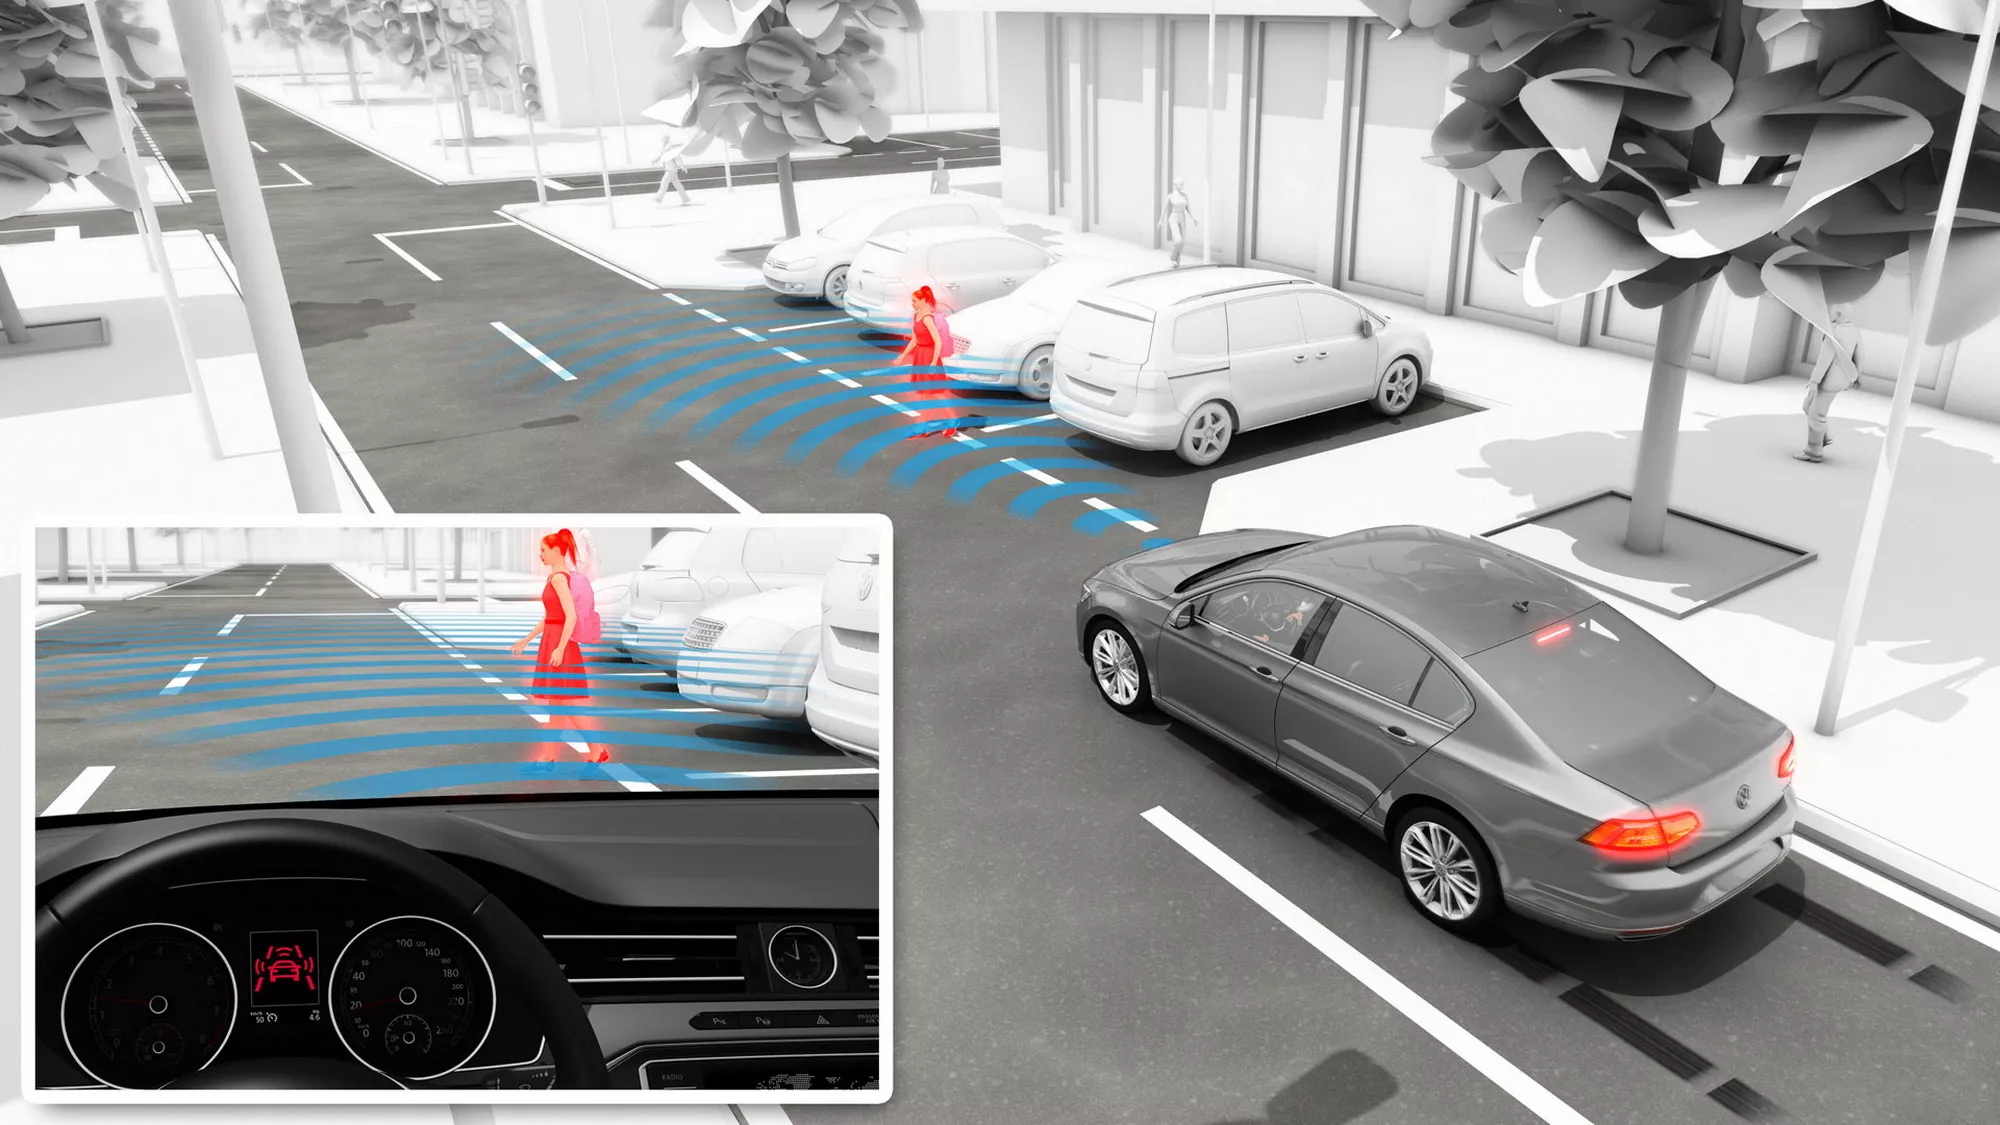 Датчики пешехода. Радар Front assist Volkswagen. Активная защита пешеходов BMW что это. Система защиты пешеходов BMW. Система защиты пешеходов Тигуан 2018.